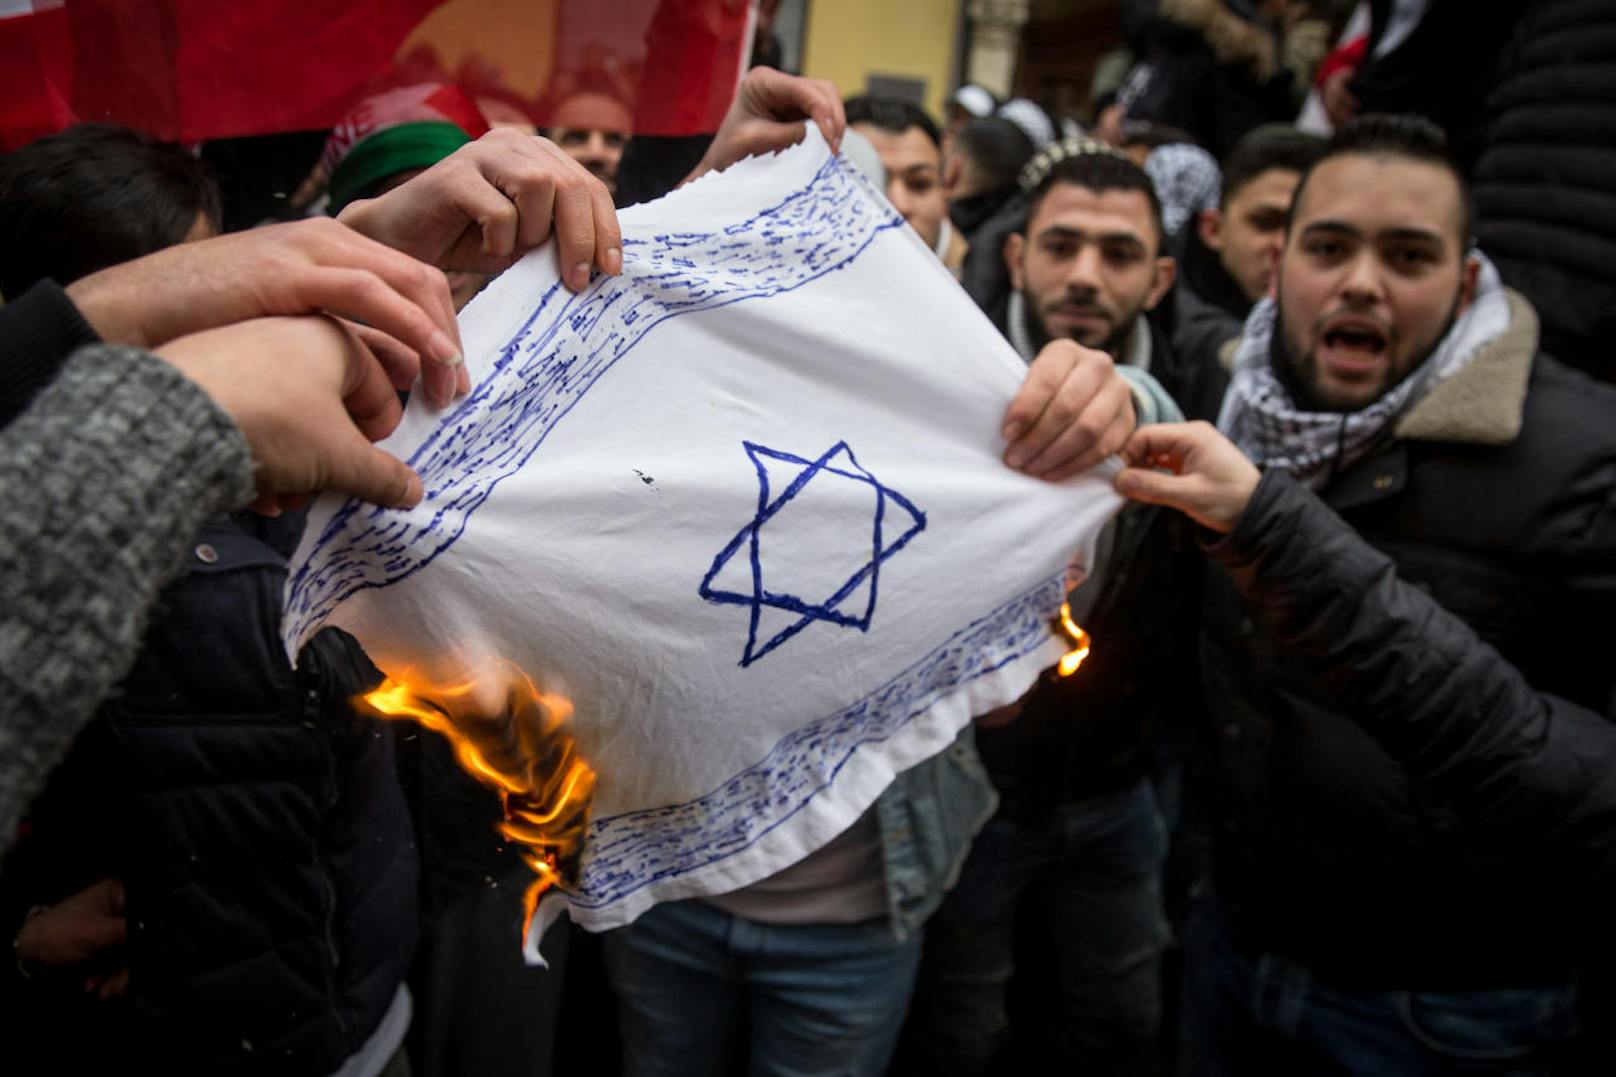 Pro Palästina Demonstration in Berlin als Reaktion auf die Anerkennung von Jerusalem als israelische Hauptstadt durch US-Praesident Trump. Im Laufe der Demonstration verbrannten einige Protestler Fahnen mit Davidsternen.